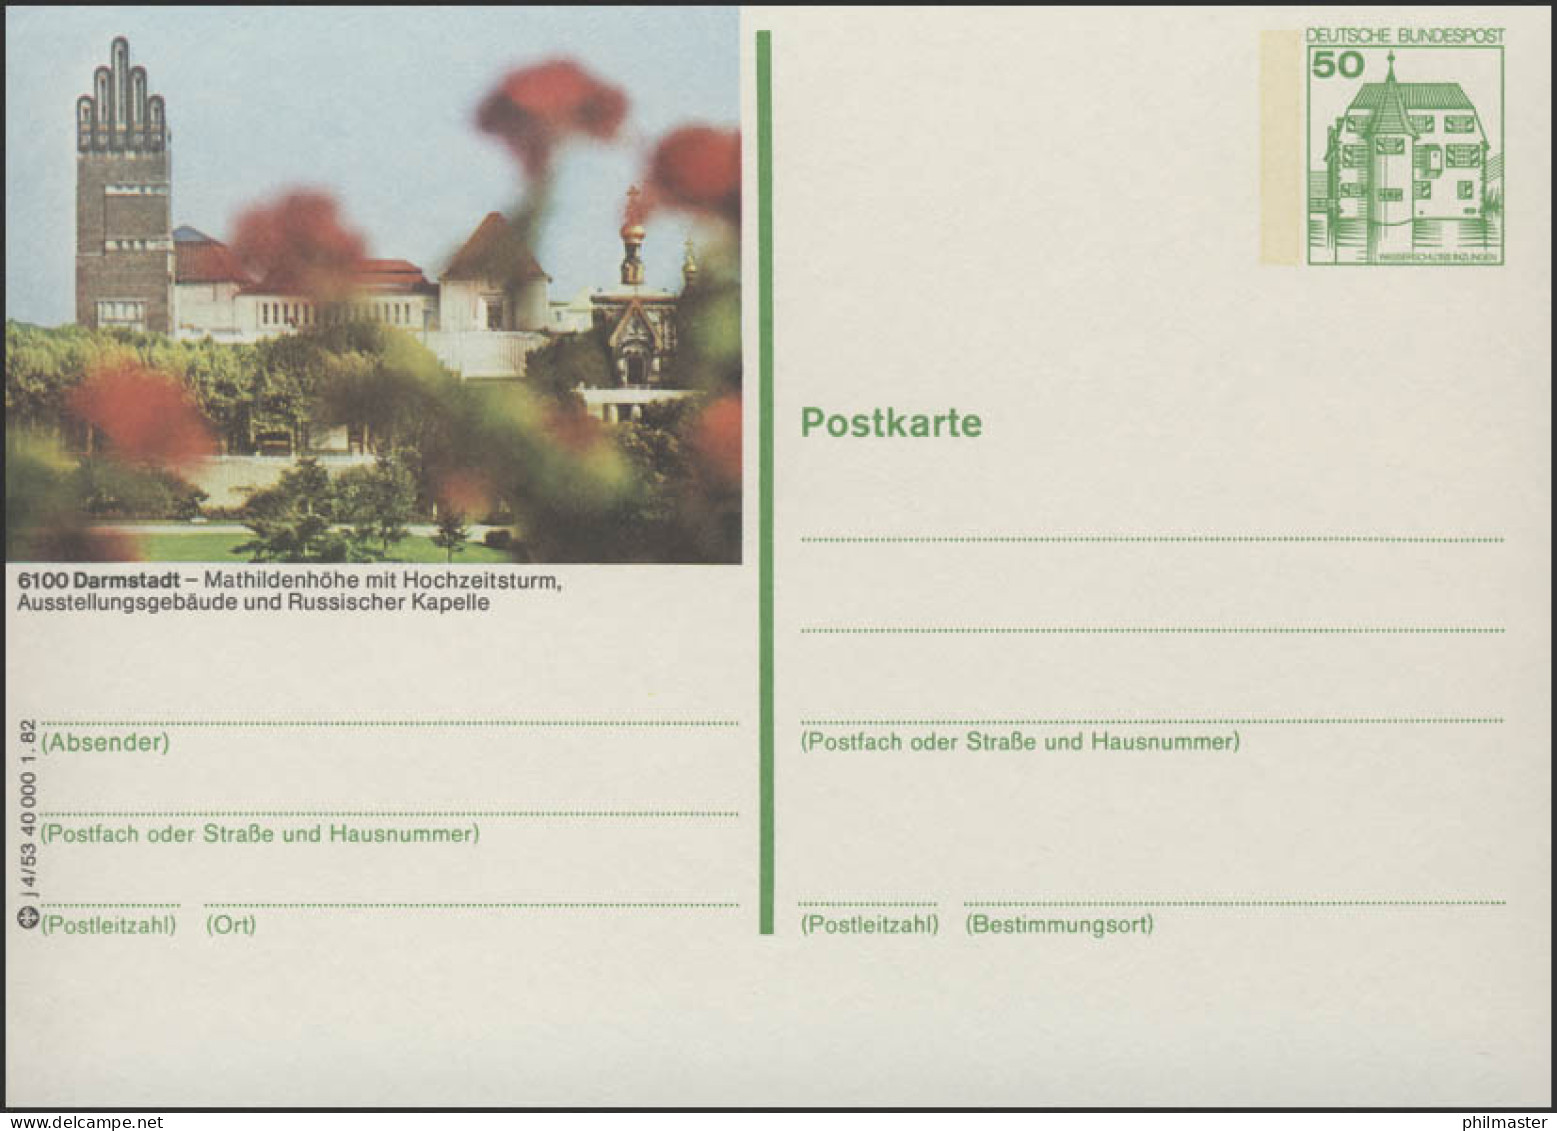 P134-j4/053 6100 Darmstadt - Mathildenhöhe ** - Bildpostkarten - Ungebraucht